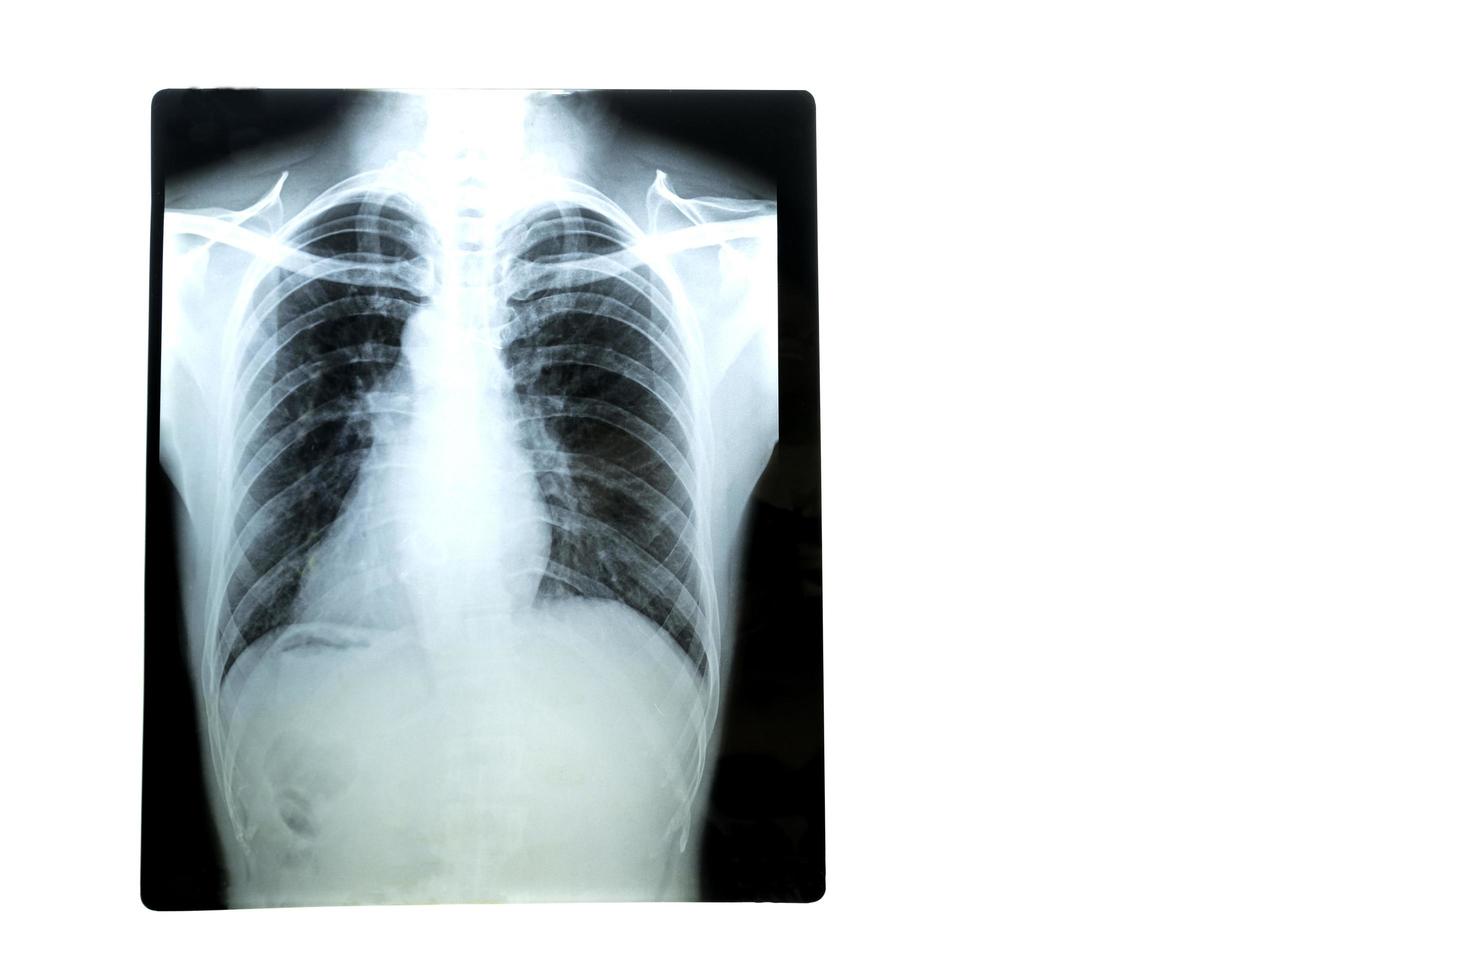 filme de raio-x dos pulmões de um paciente do sexo masculino no hospital em um fundo branco. foco suave. foto